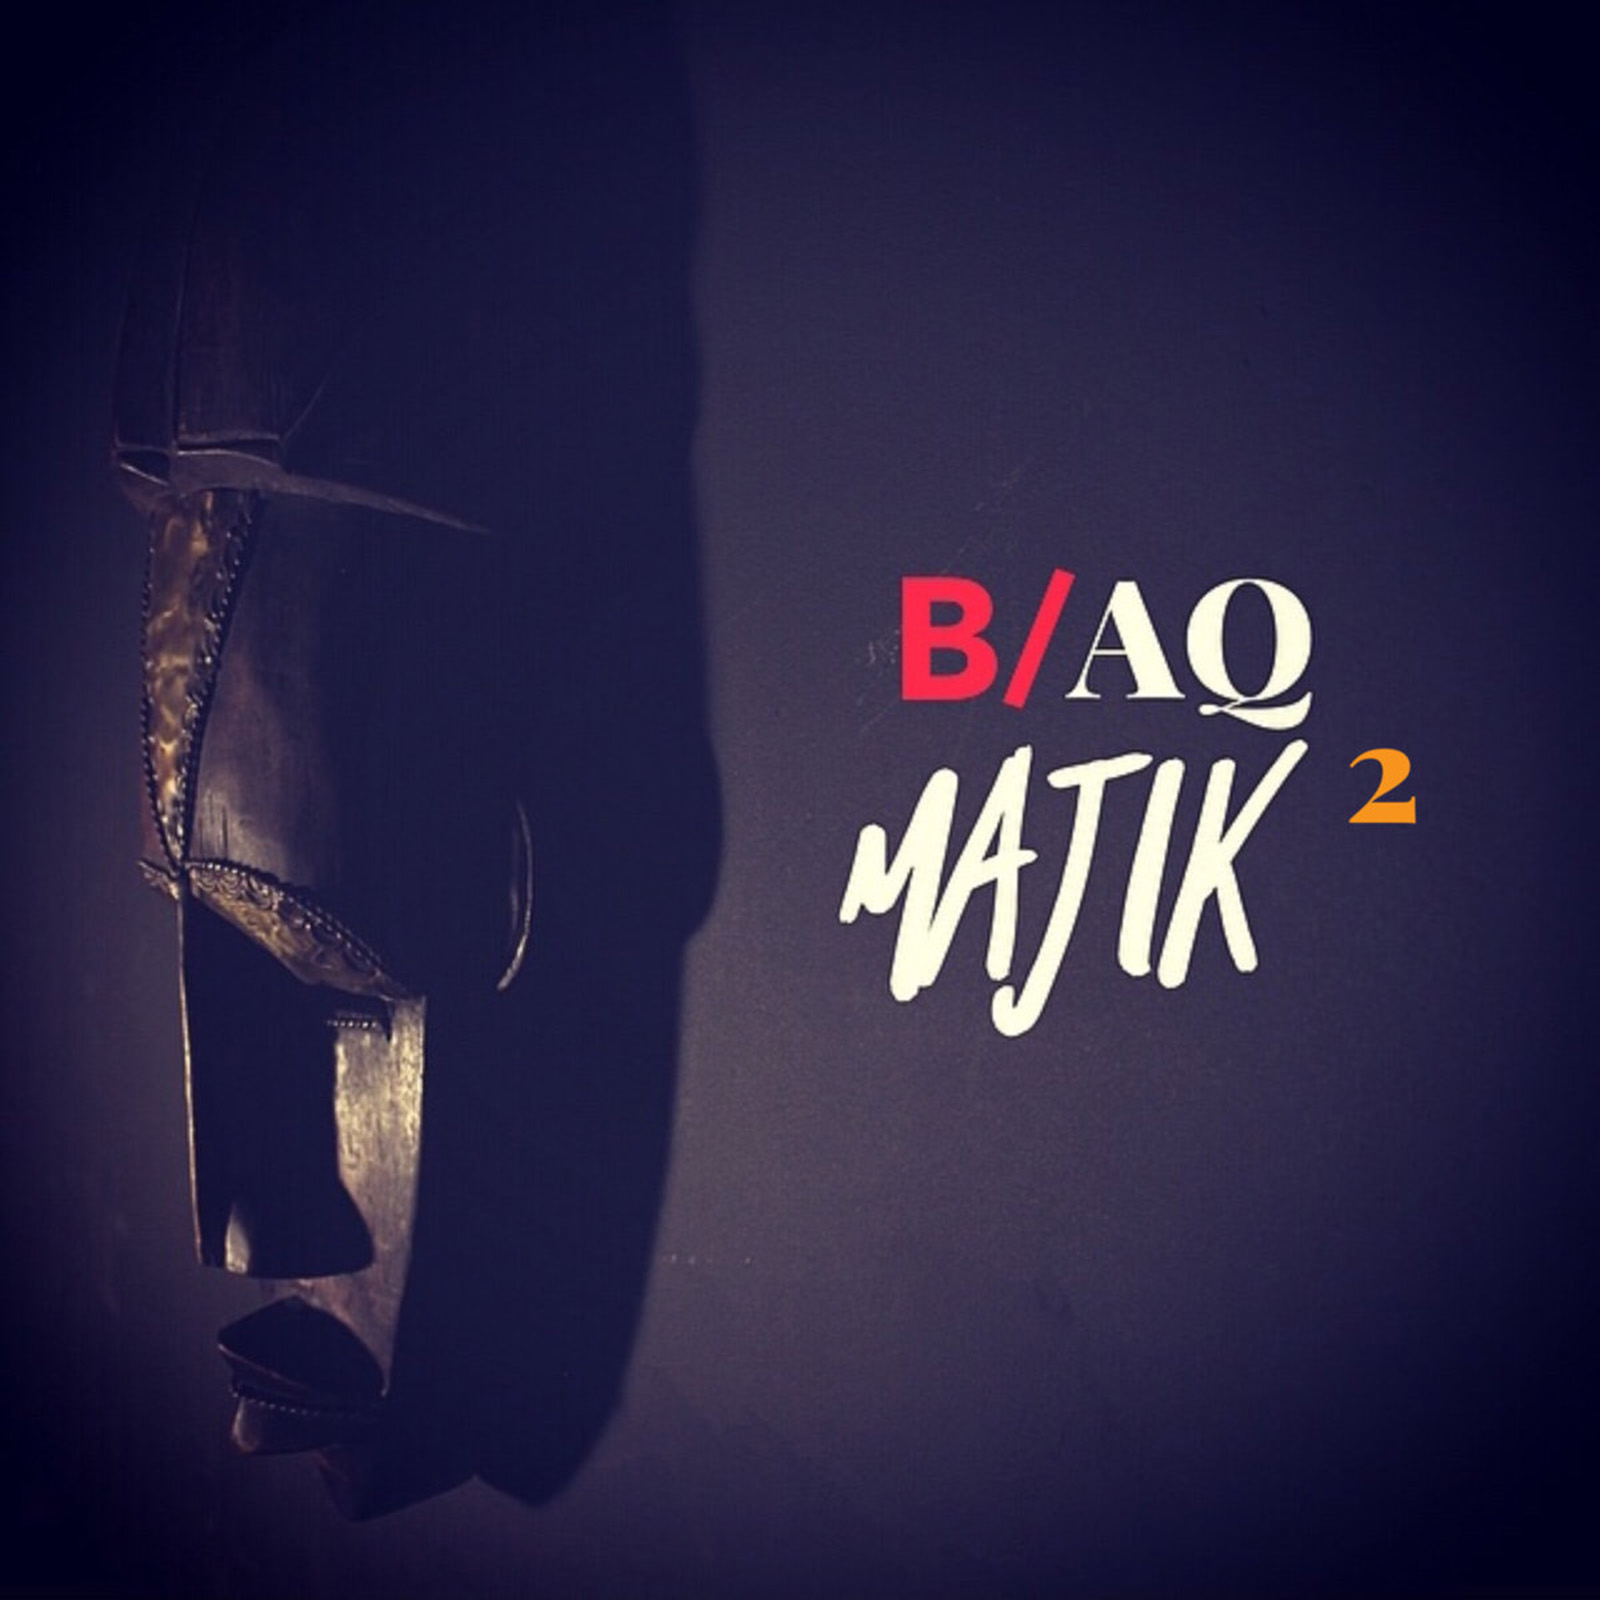 B​/​aQ Majik 2 by O'hene Savánt